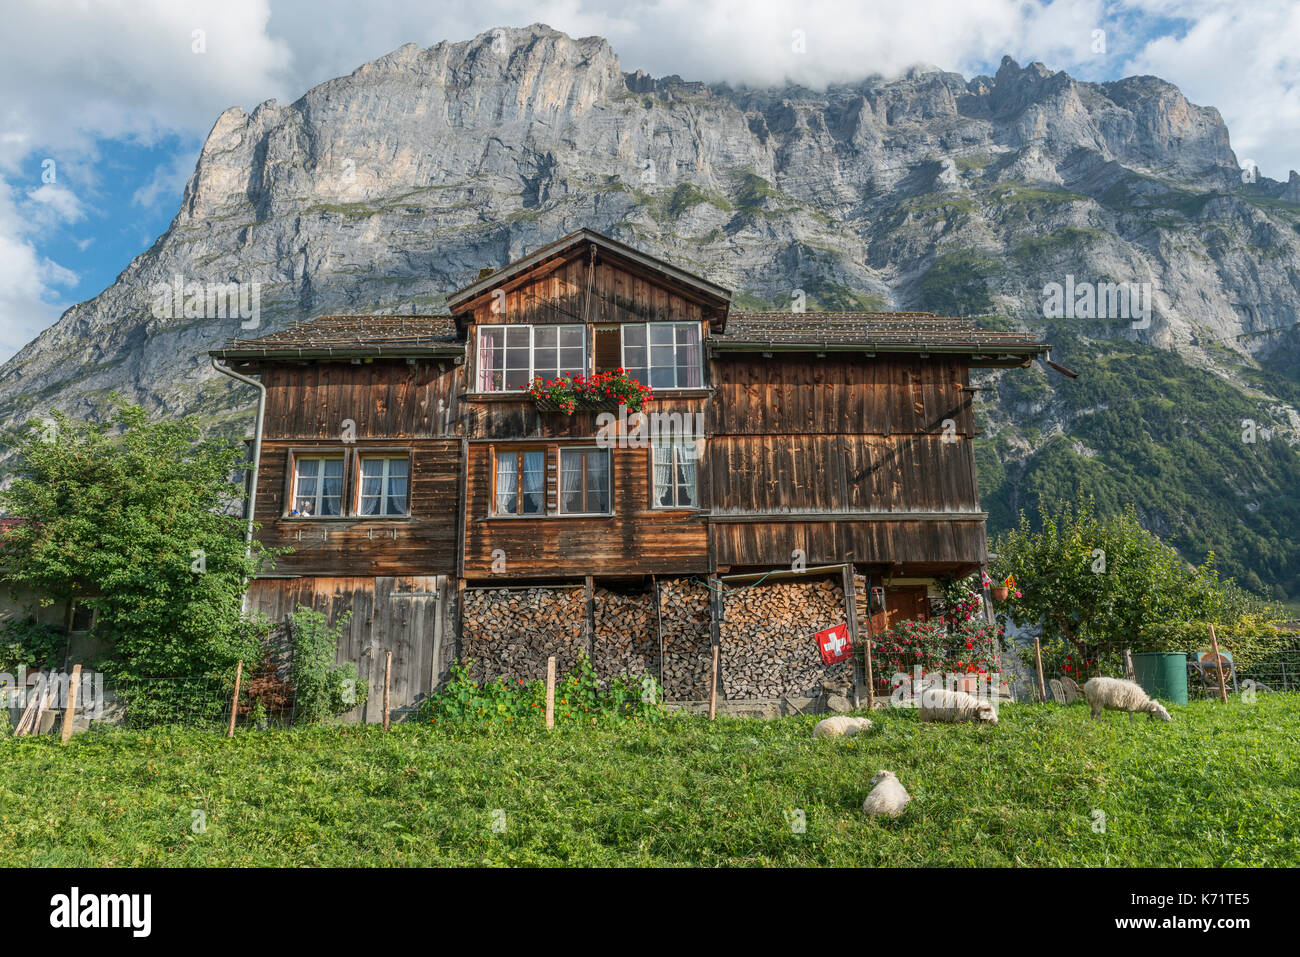 Tradizionale in legno casa alpina con pecore al pascolo, Grindelwald, Svizzera Foto Stock